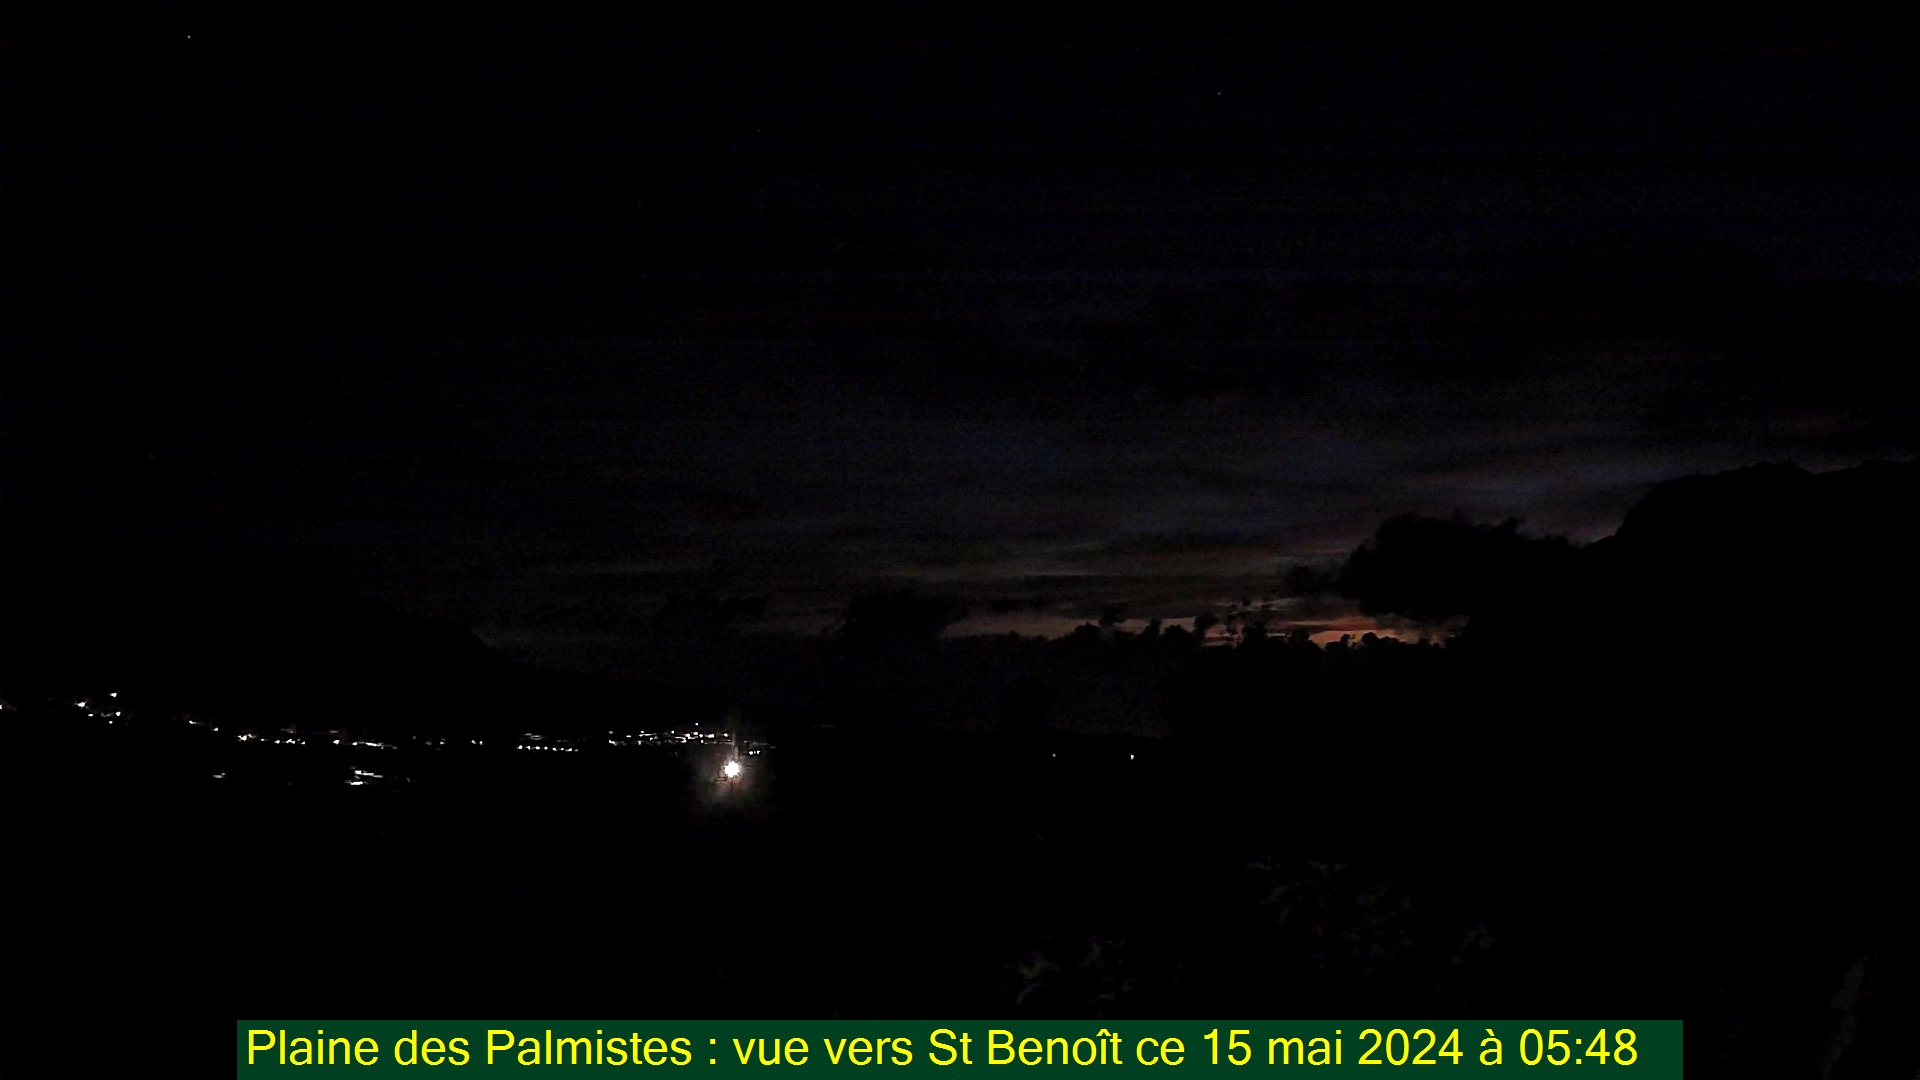 Saint-Denis (Réunion) Mon. 05:50